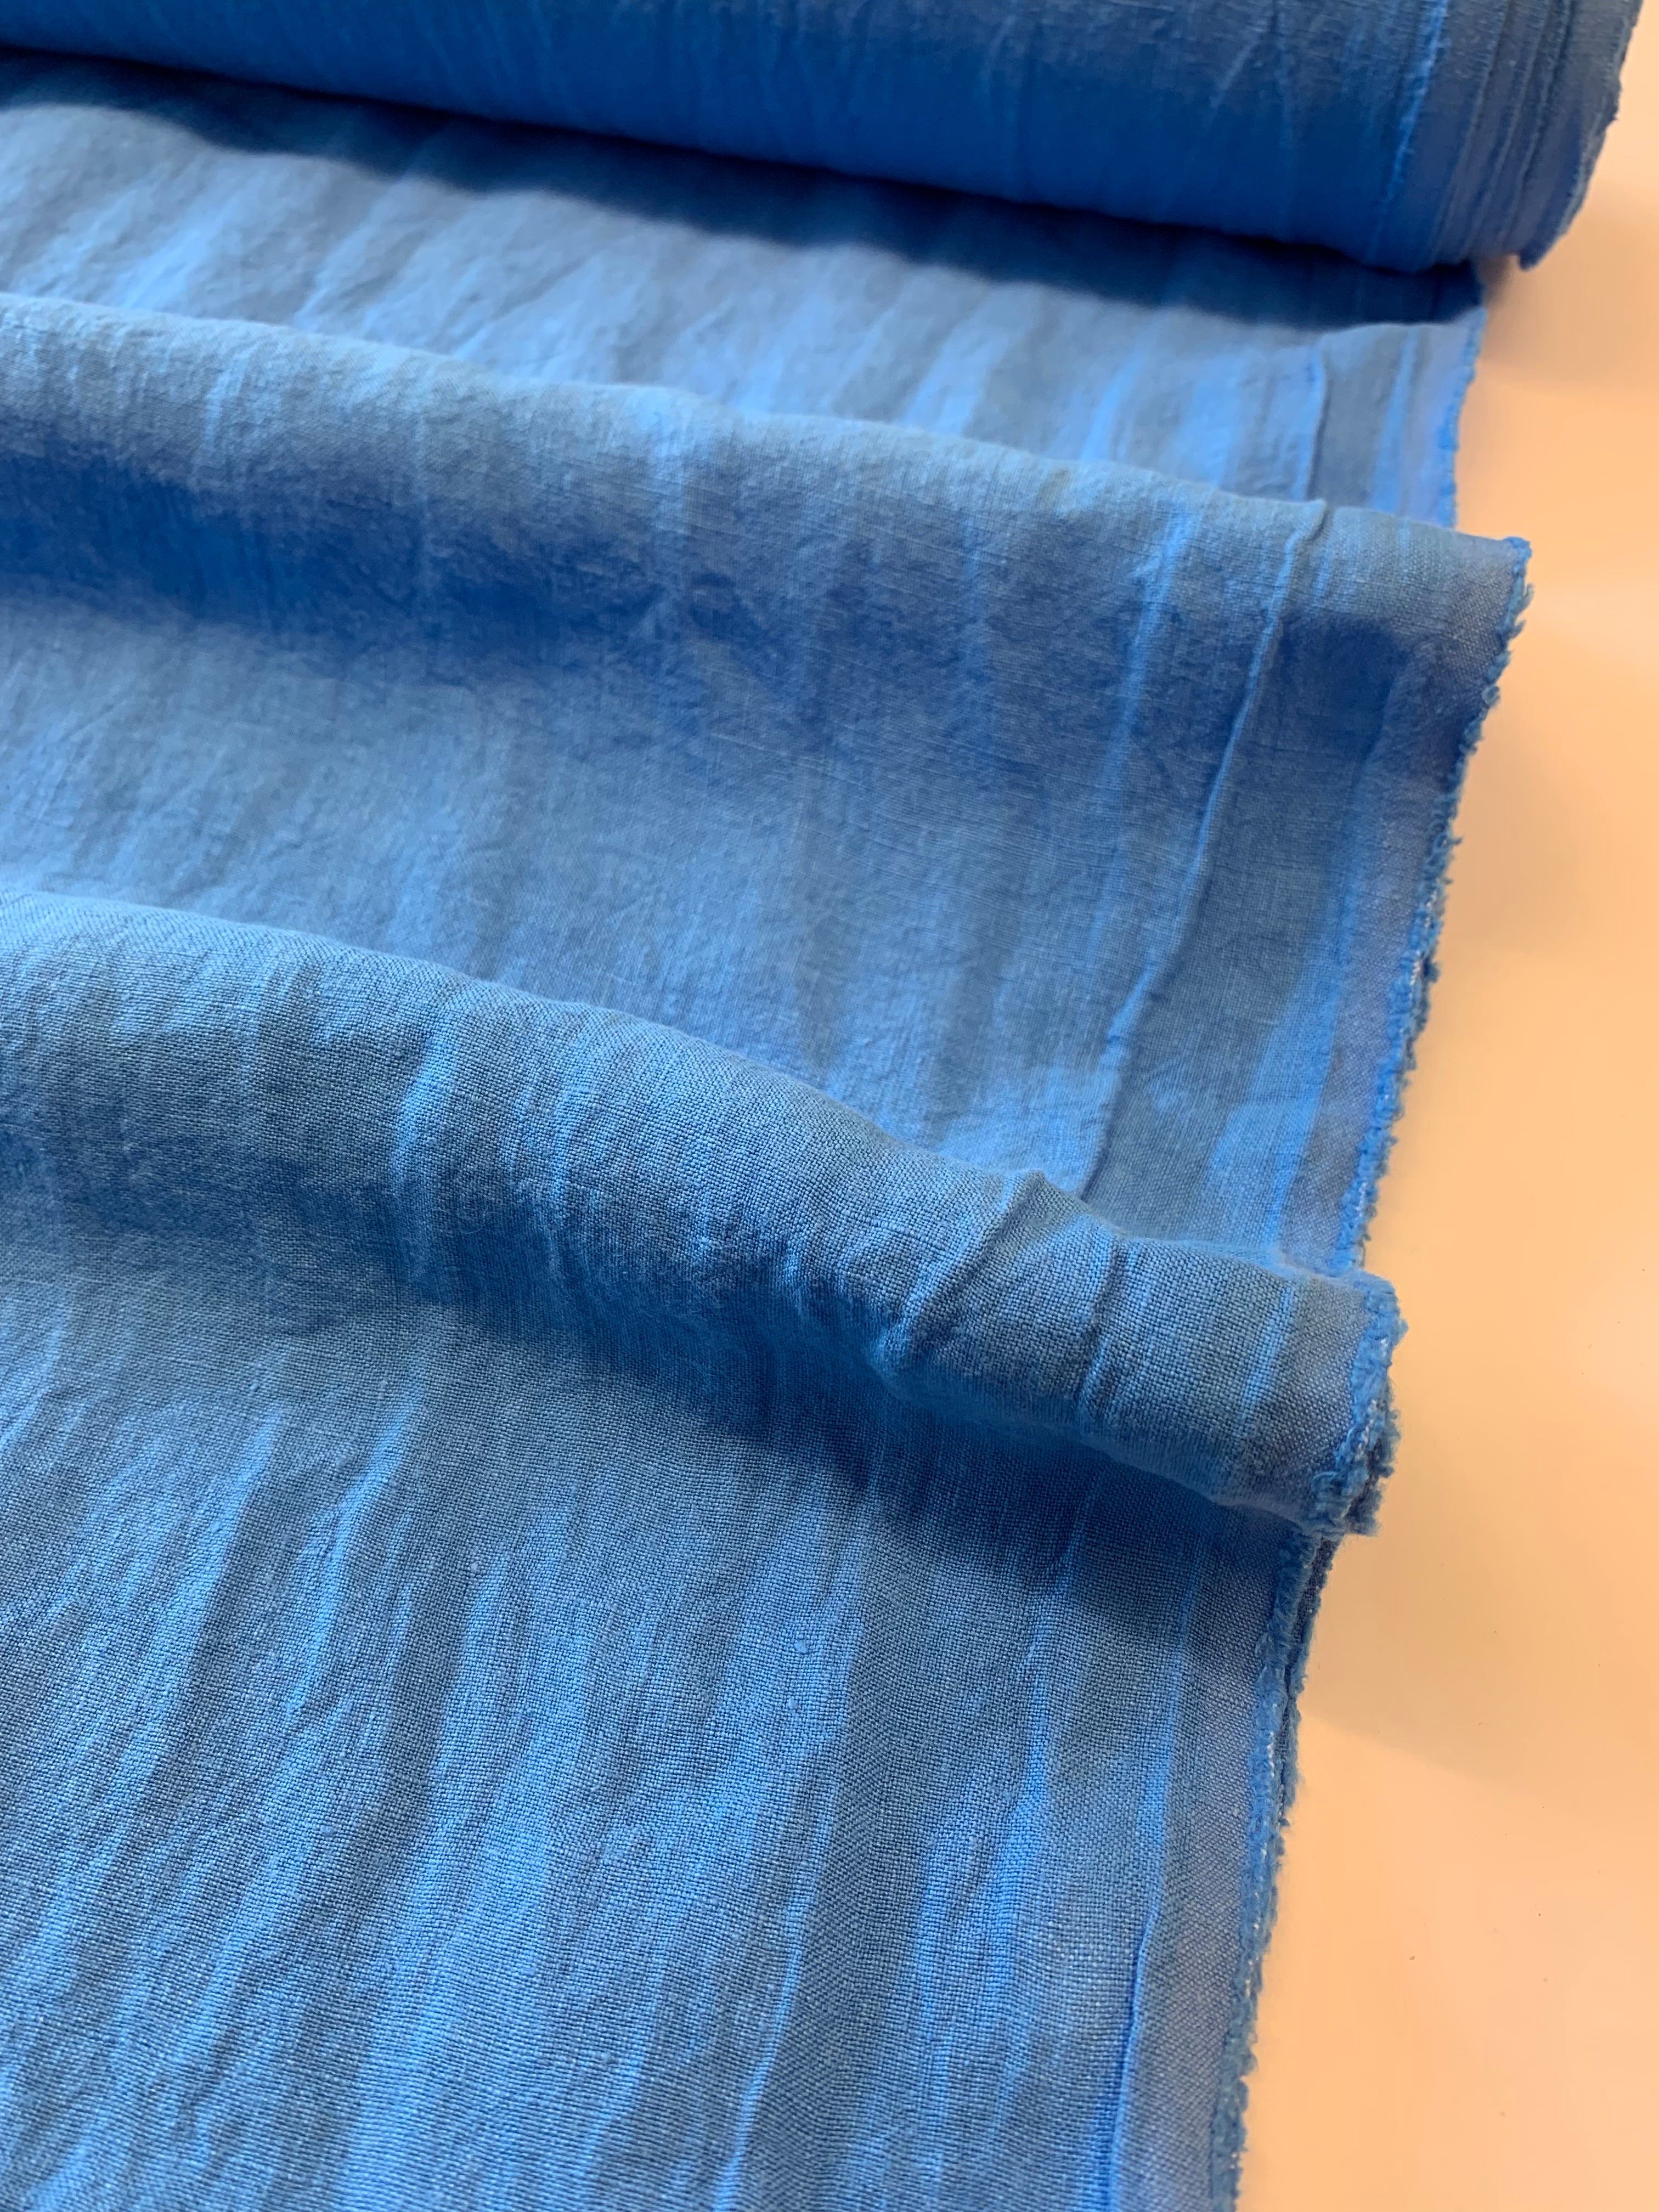 Antique Wash Linen in Cobalt